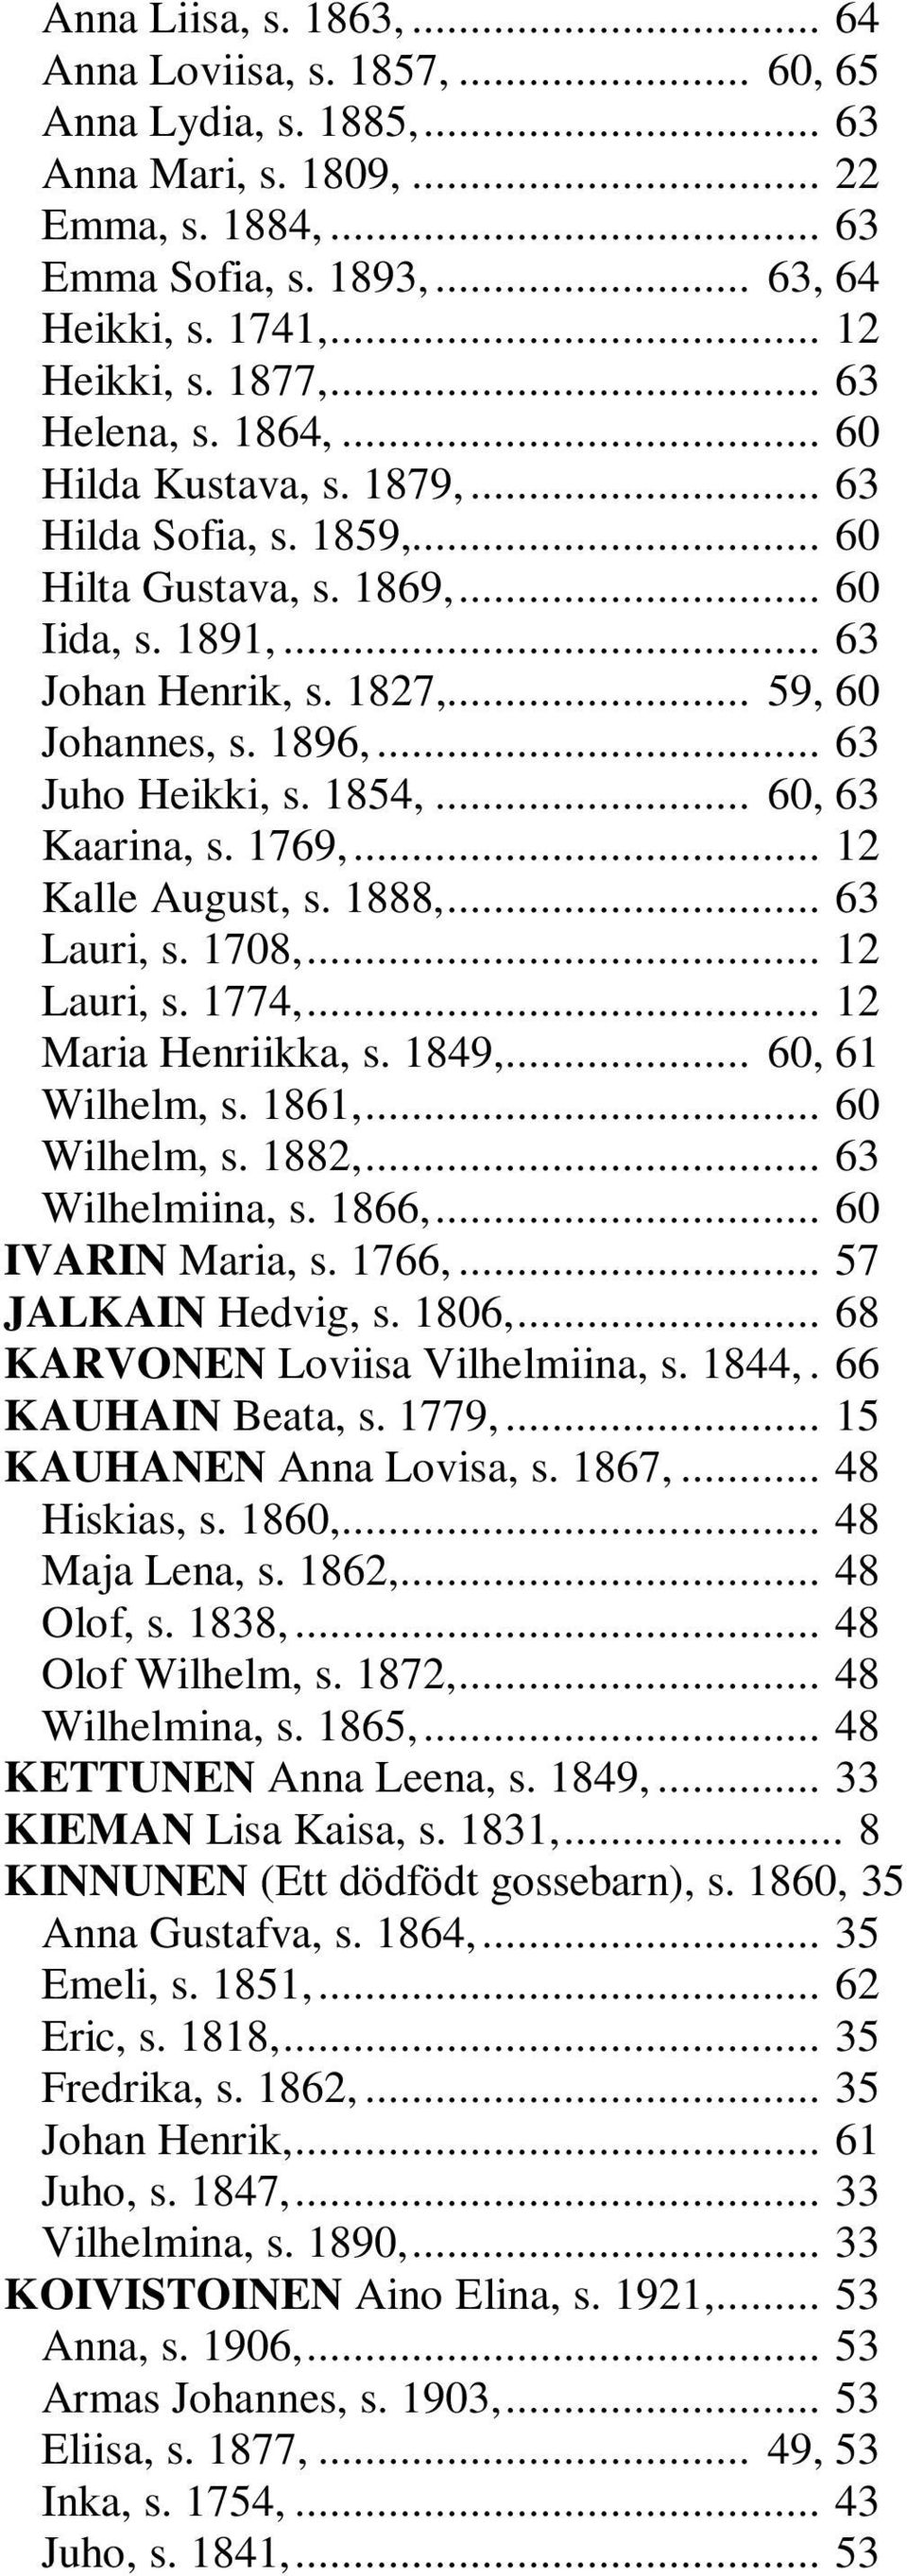 .. 63 Juho Heikki, s. 1854,... 60, 63 Kaarina, s. 1769,... 12 Kalle August, s. 1888,... 63 Lauri, s. 1708,... 12 Lauri, s. 1774,... 12 Maria Henriikka, s. 1849,... 60, 61 Wilhelm, s. 1861,.